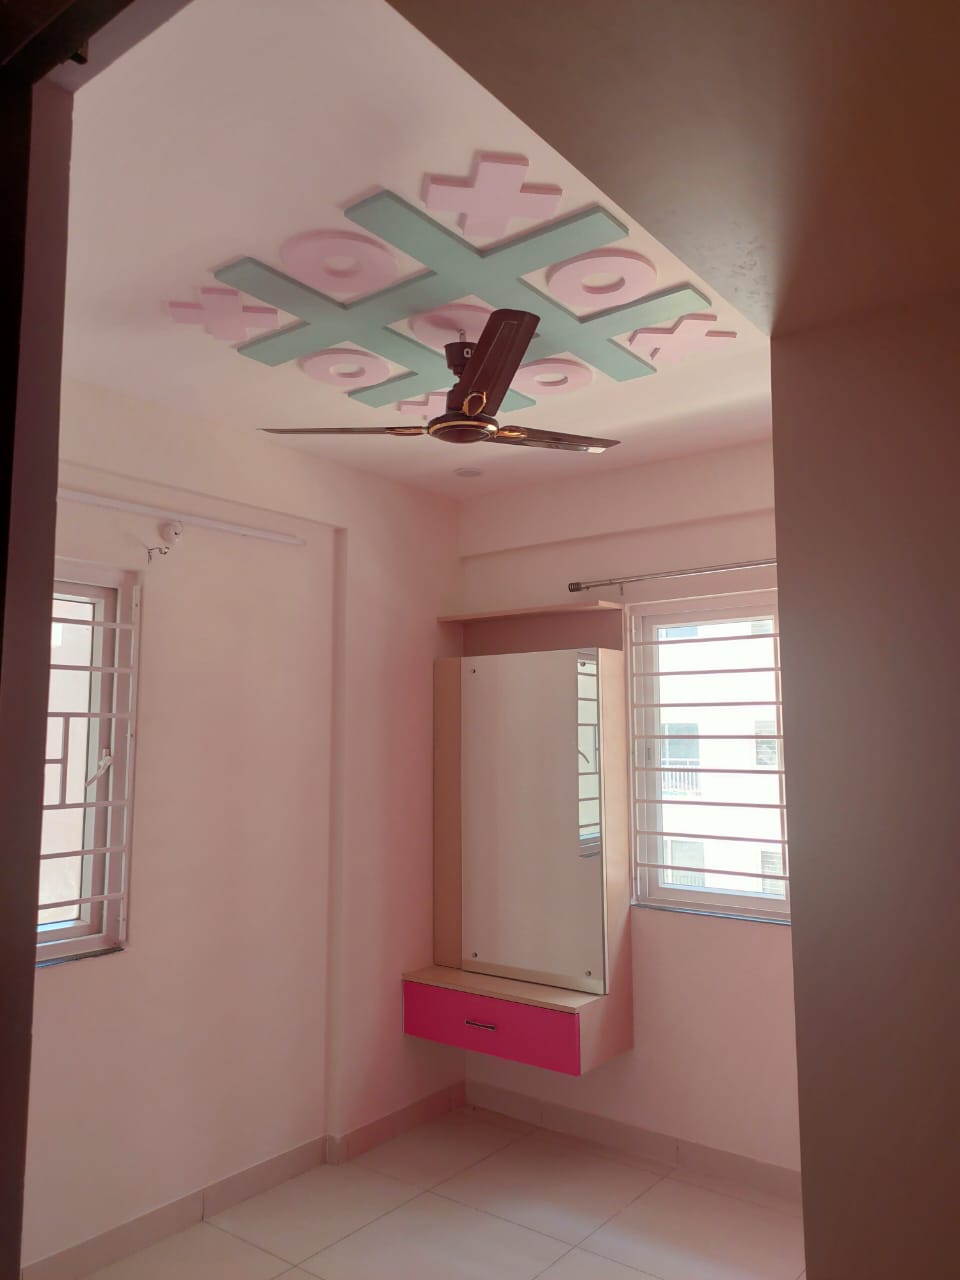 Designer Ceiling